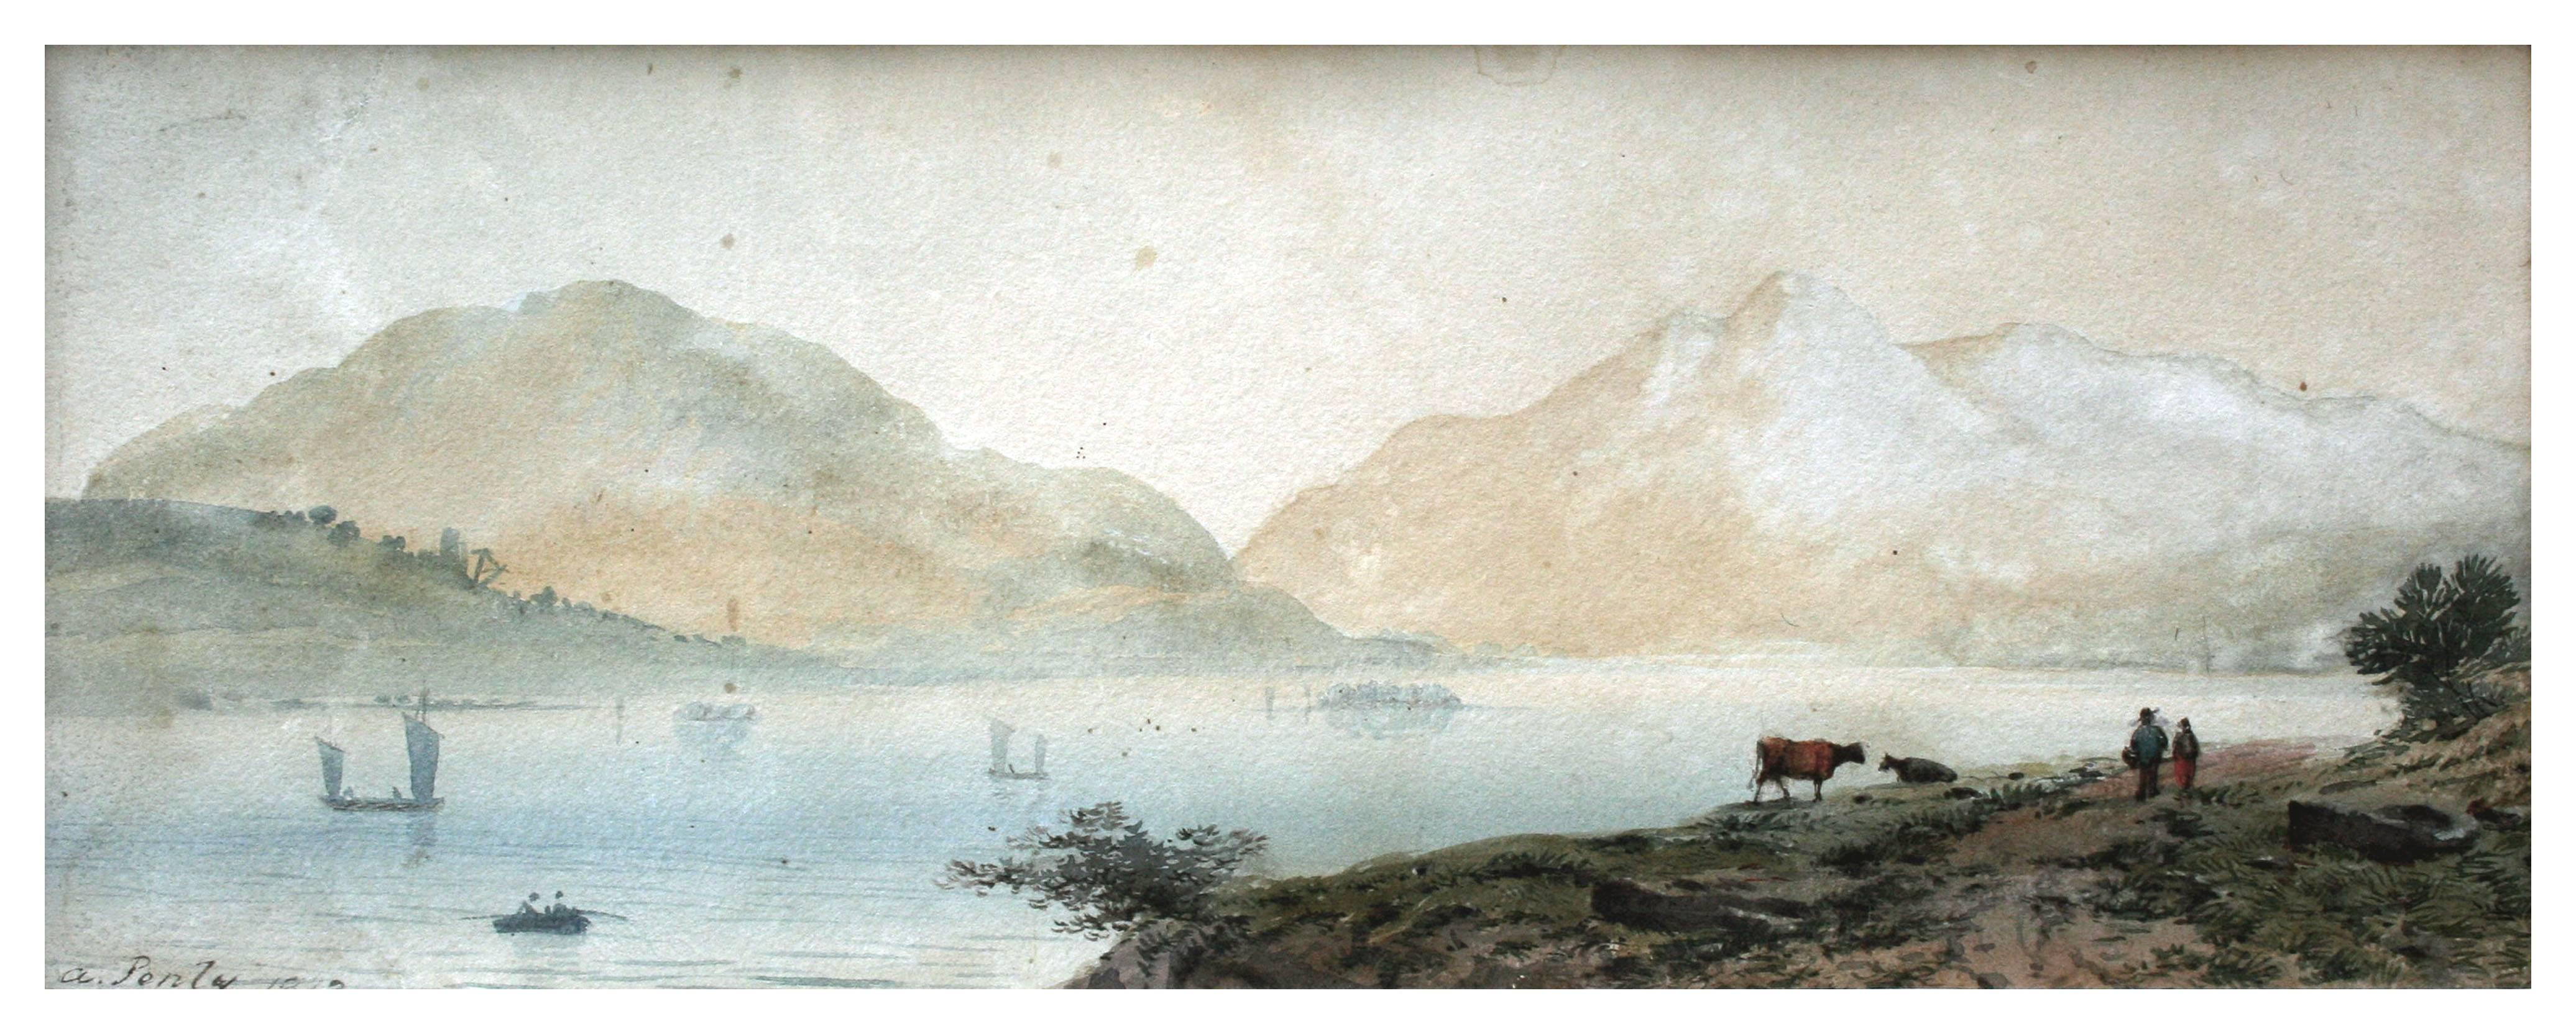 19th Century Loch Tay Scottish Landscape - Art by Aaron Edwin Penley